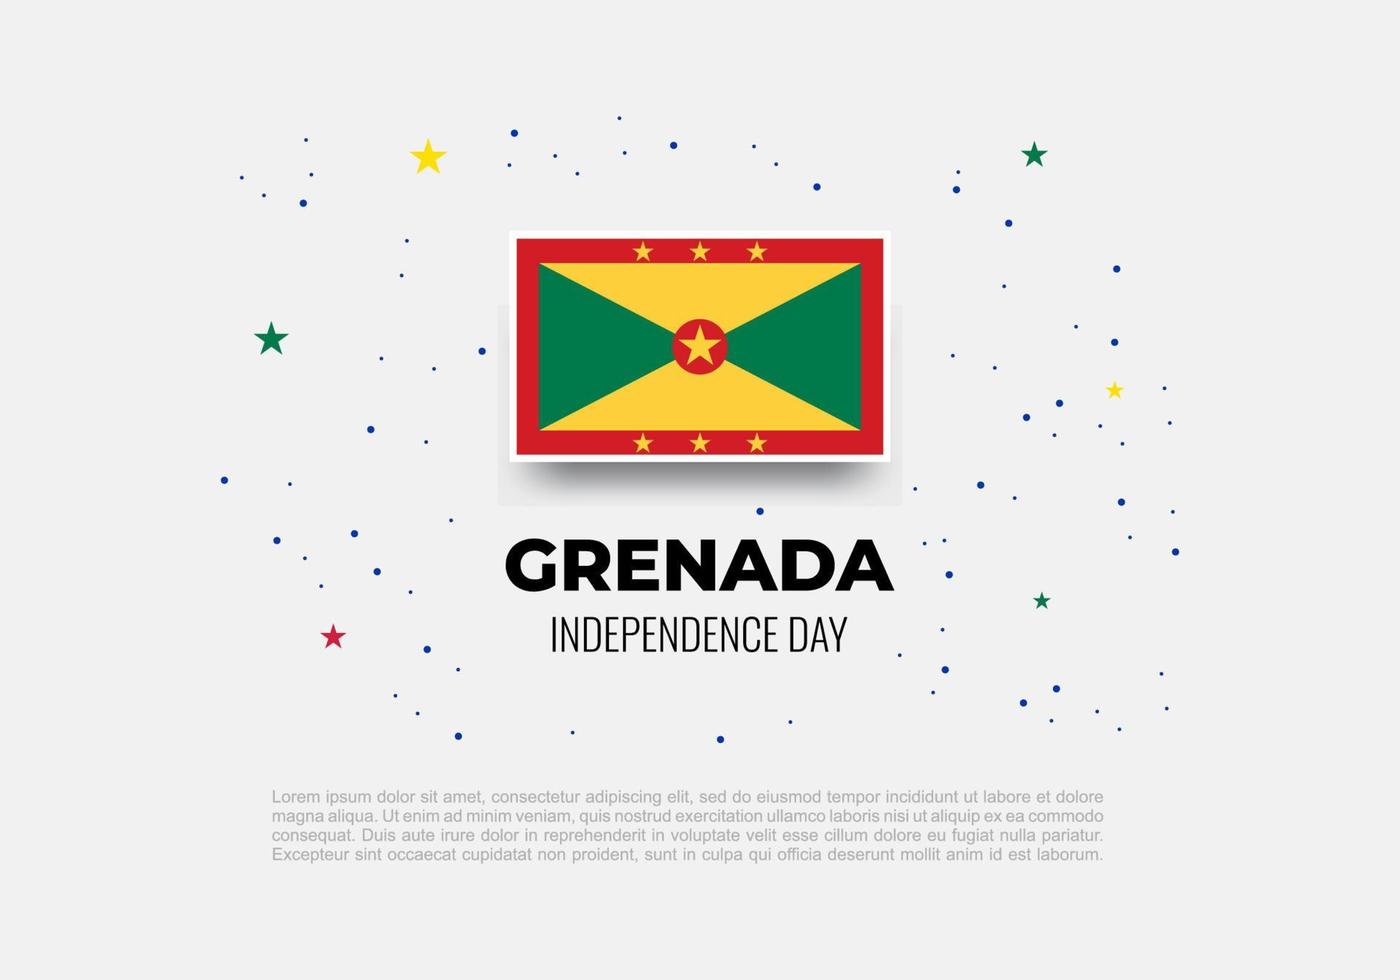 fundo do dia da independência de granada comemorado em 7 de fevereiro vetor